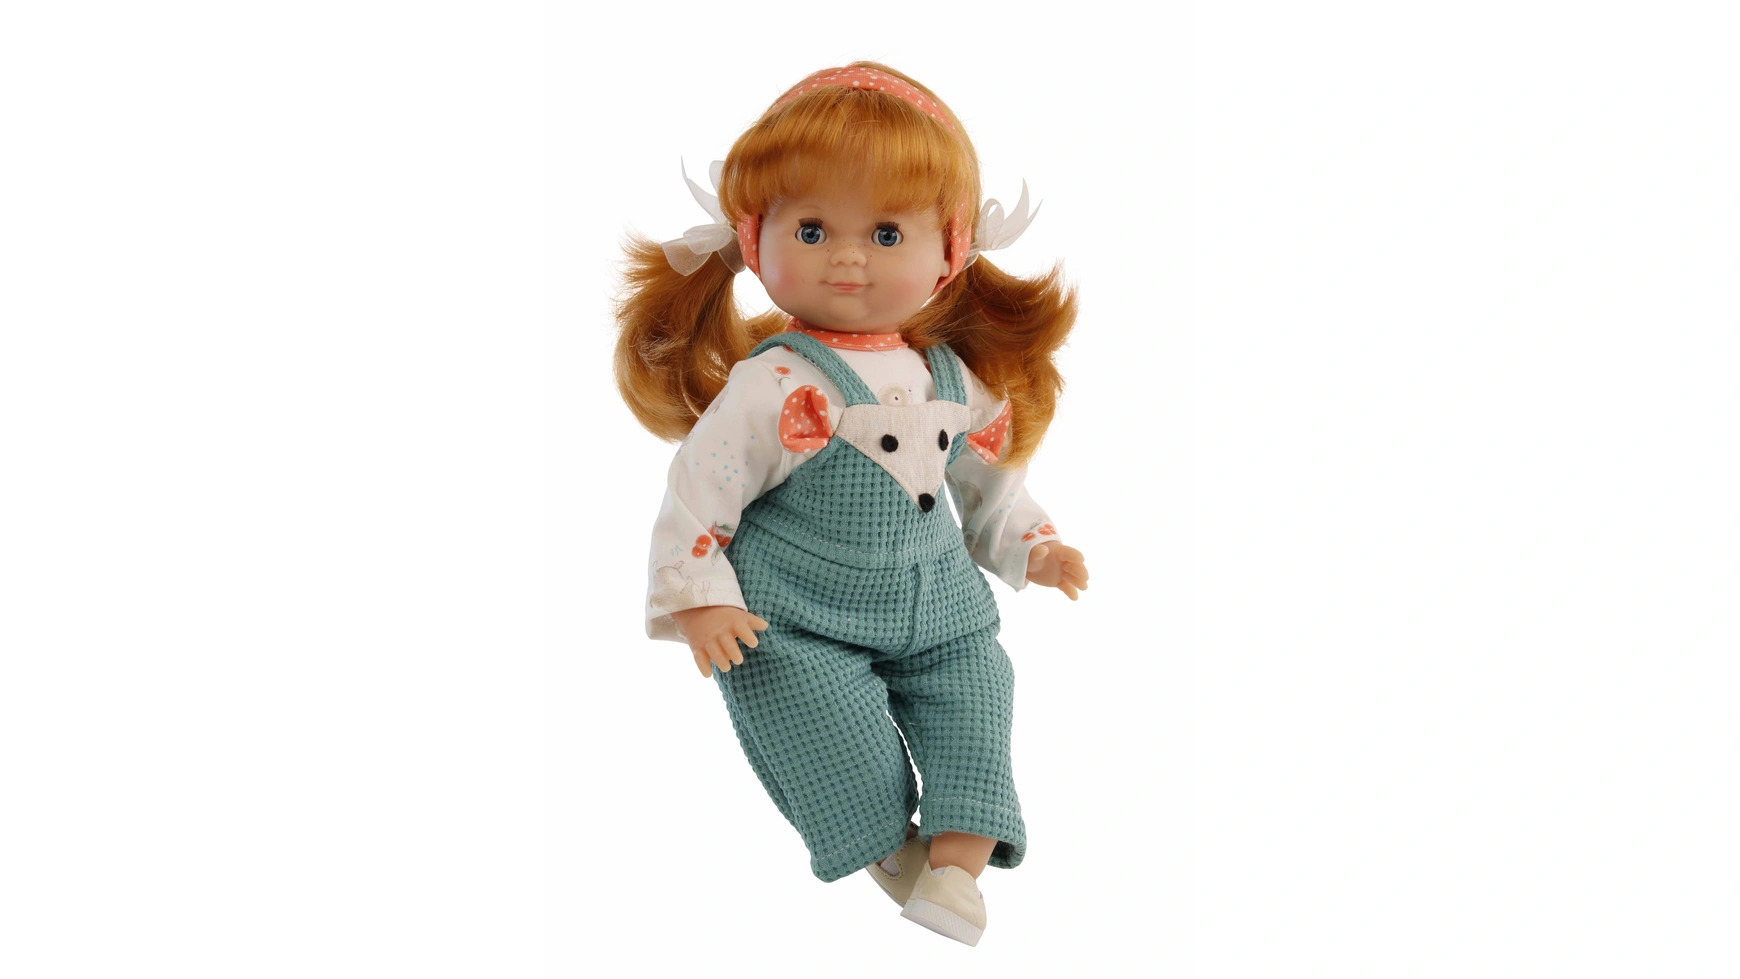 Куклы Schildkroet-Puppen Шлюммерле 32 см, рыжие волосы, голубые спящие глаза, мышь в одежде